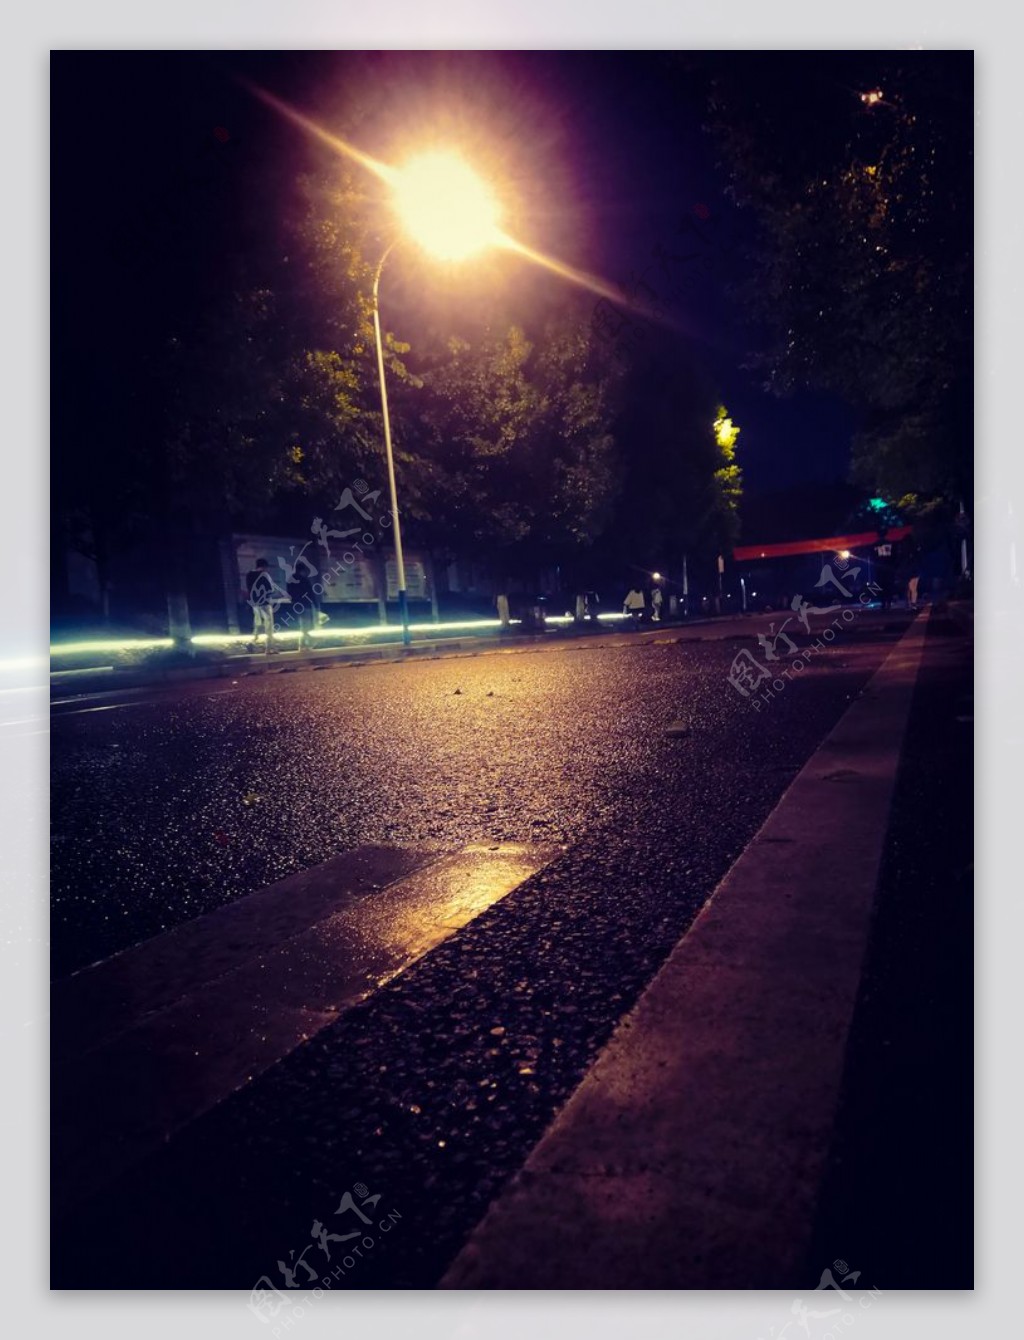 晚上的校园街道